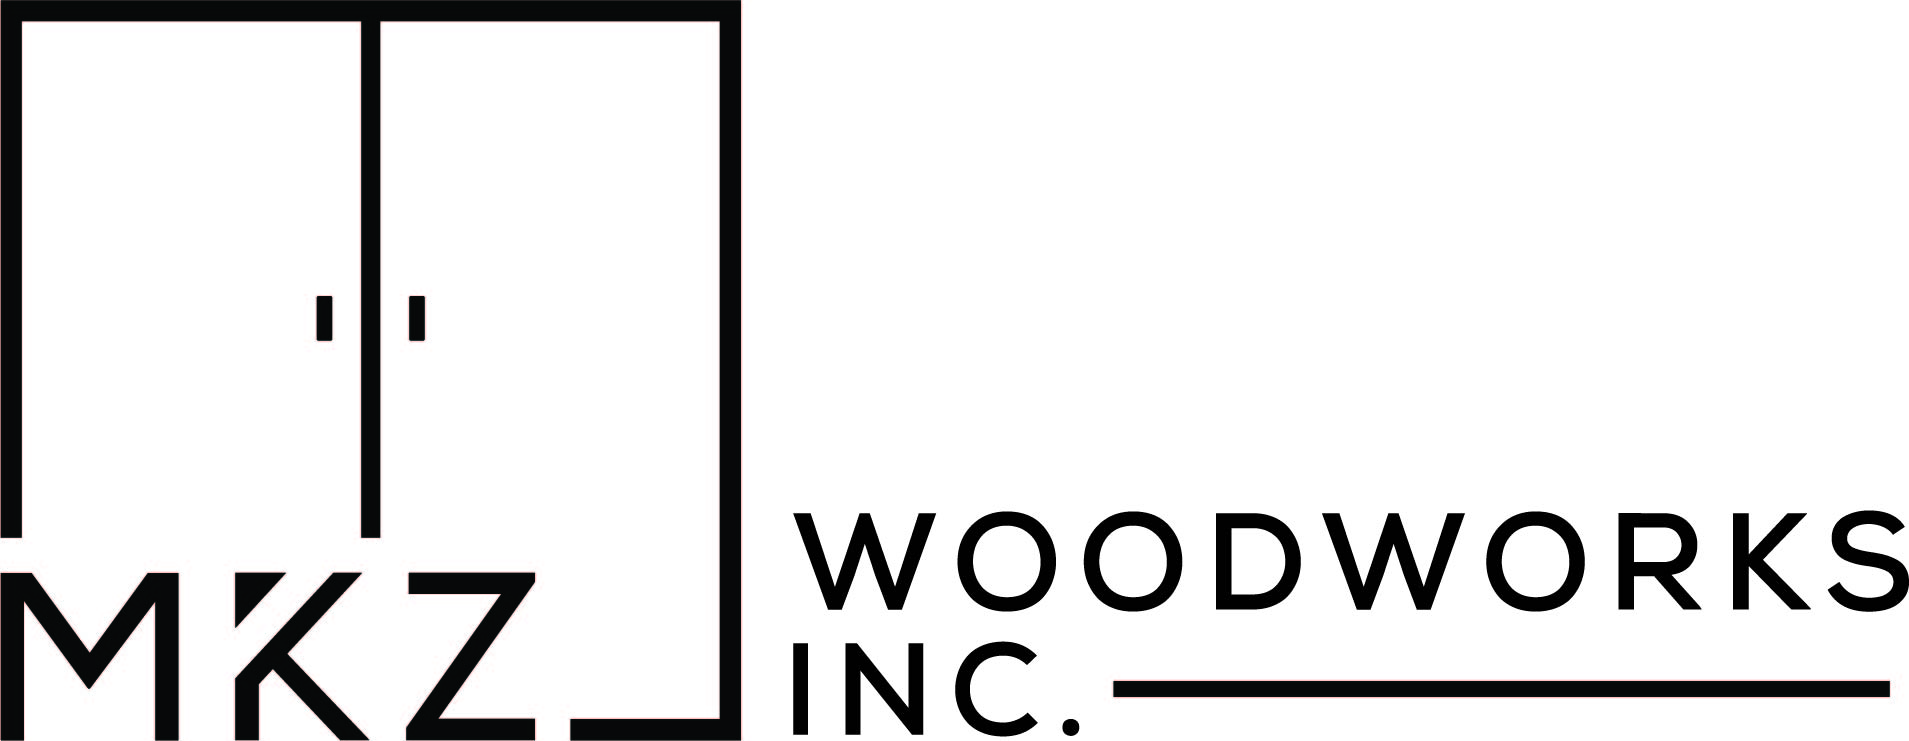 MKZ Woodworks, Inc Logo